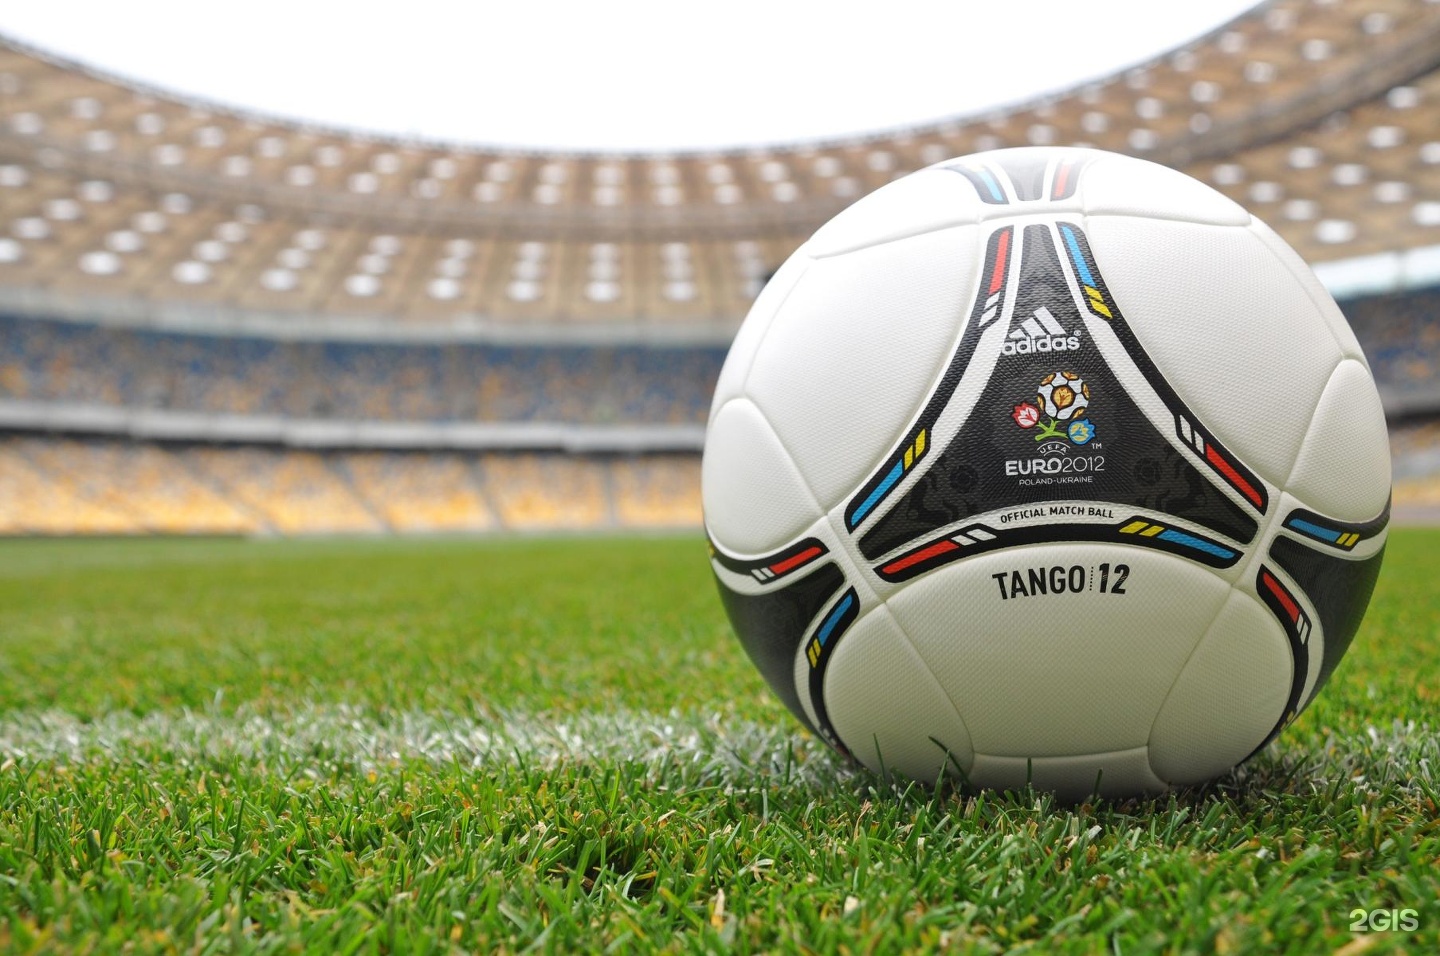 мяч спорт EURO 2016 adidas загрузить